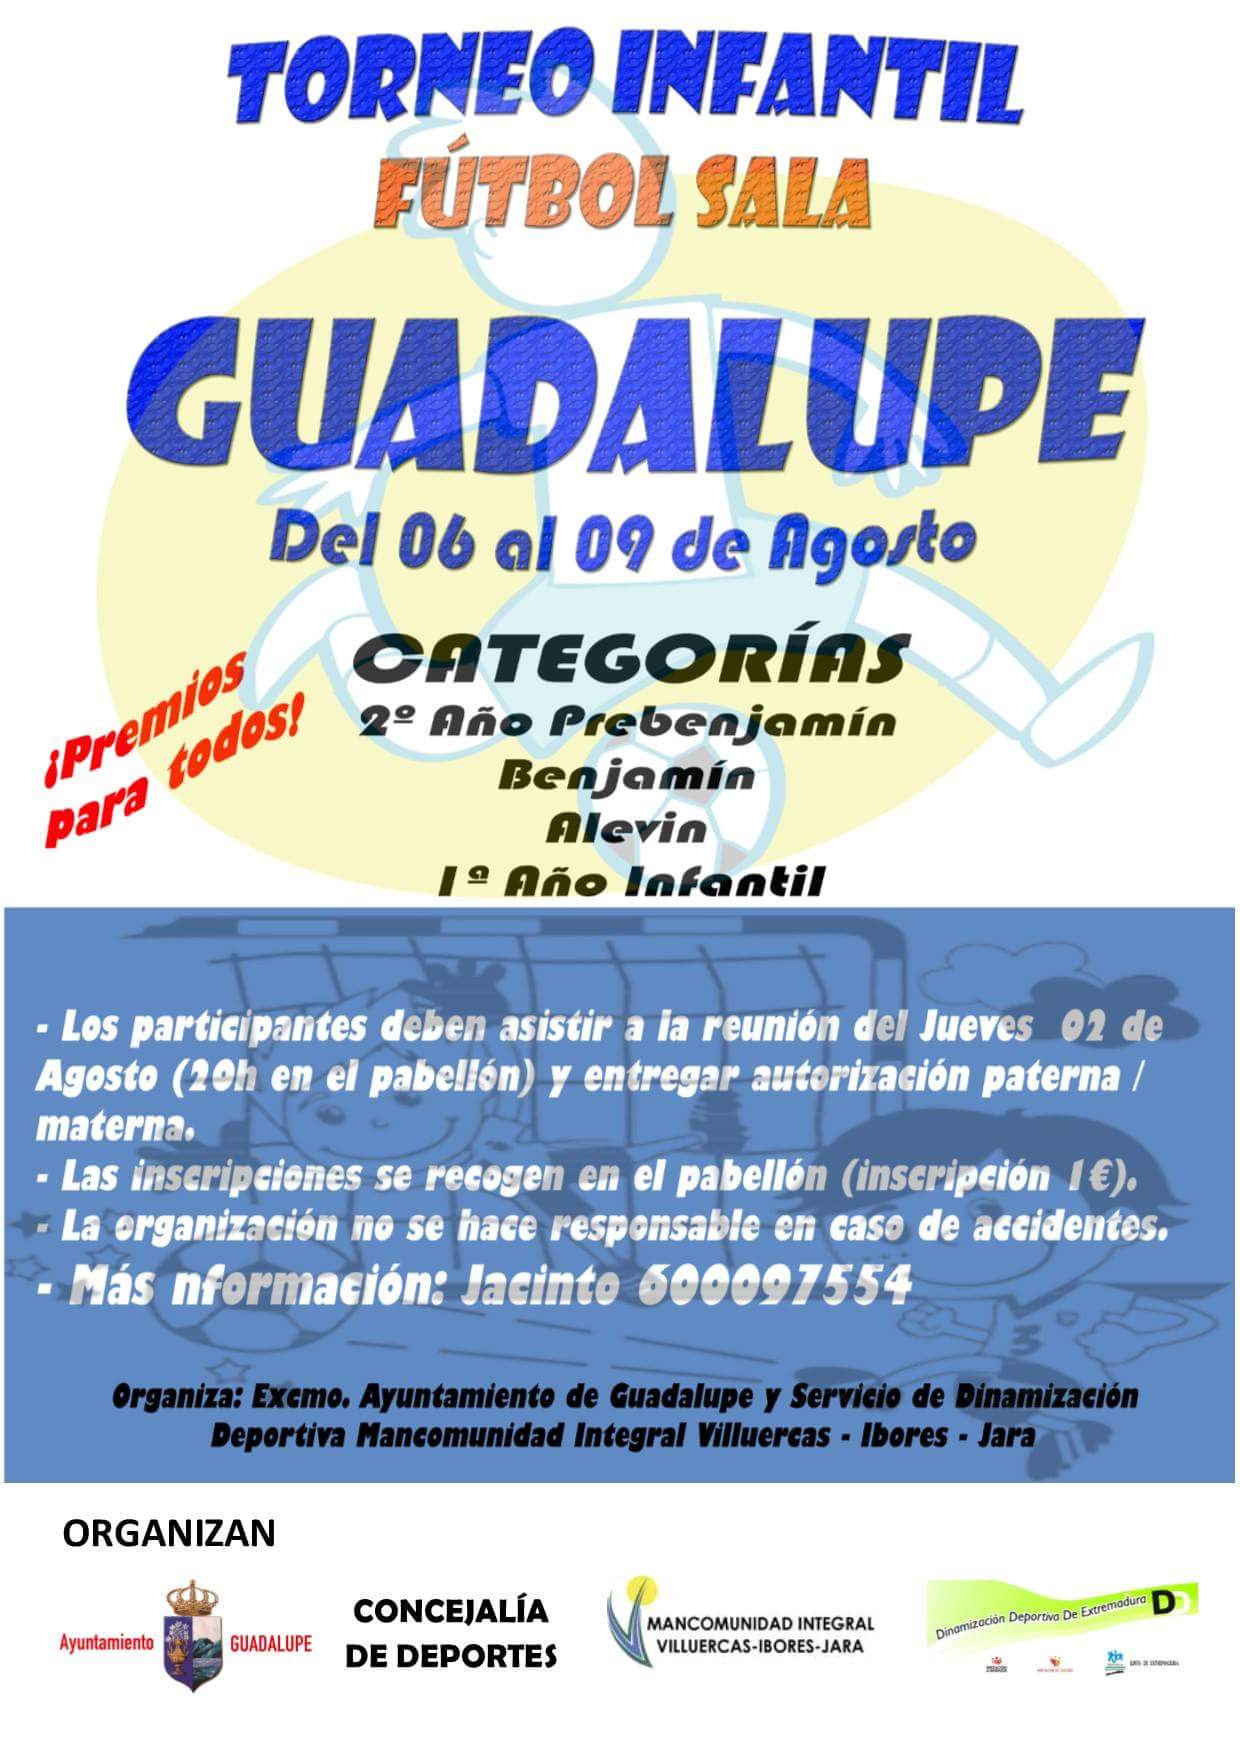 Torneo infantil de fútbol sala 2018 - Guadalupe